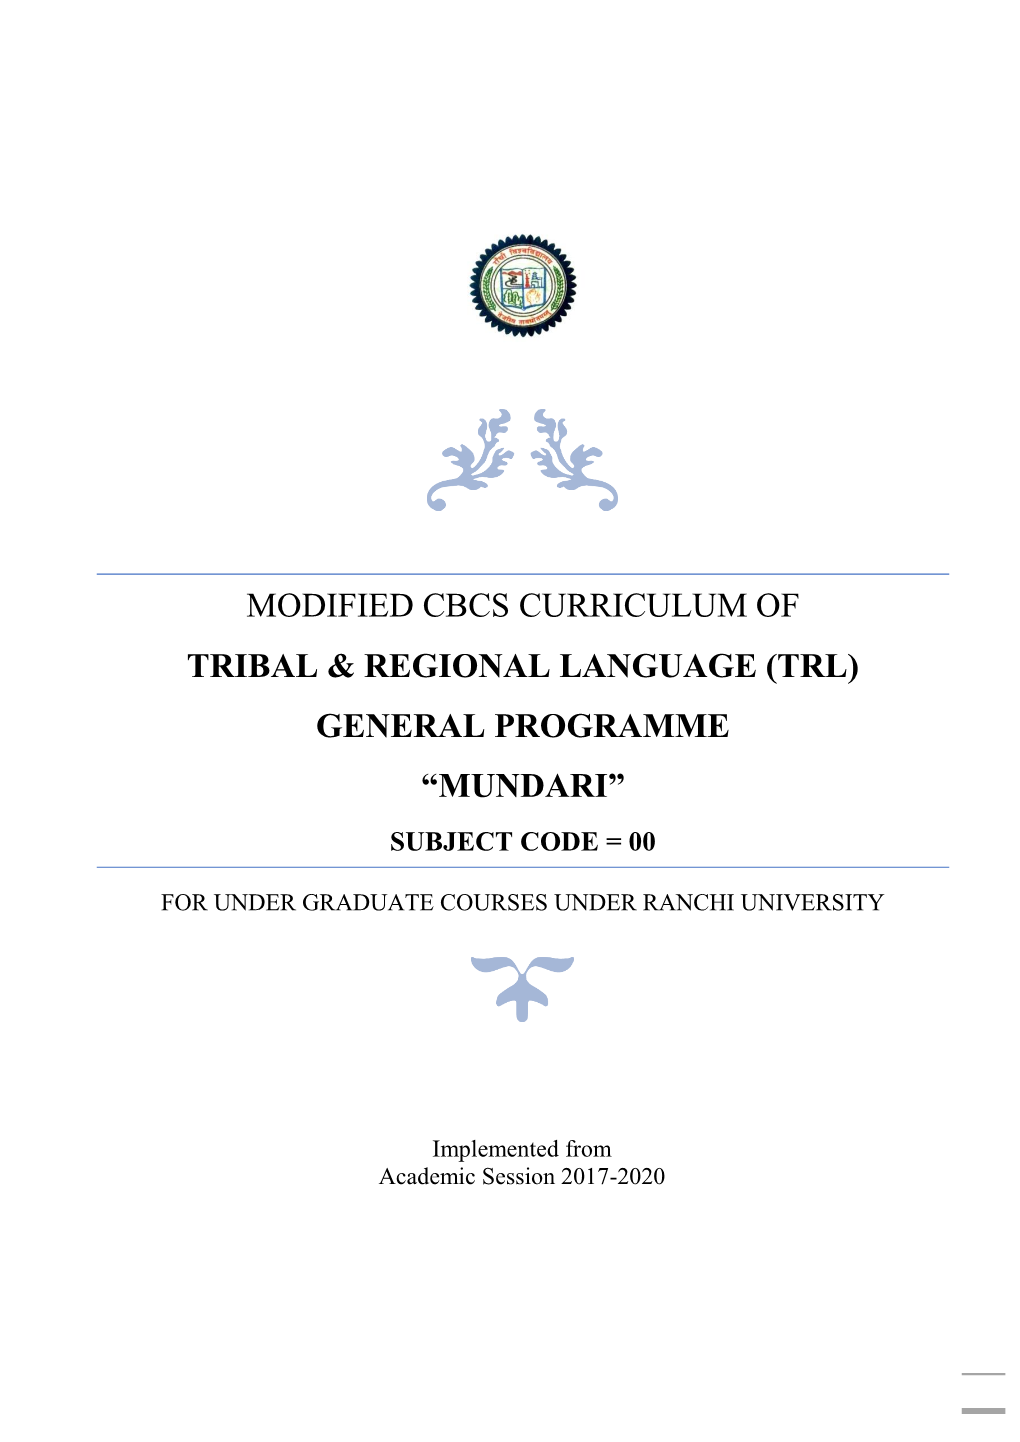 (Trl) General Programme “Mundari” Subject Code = 00